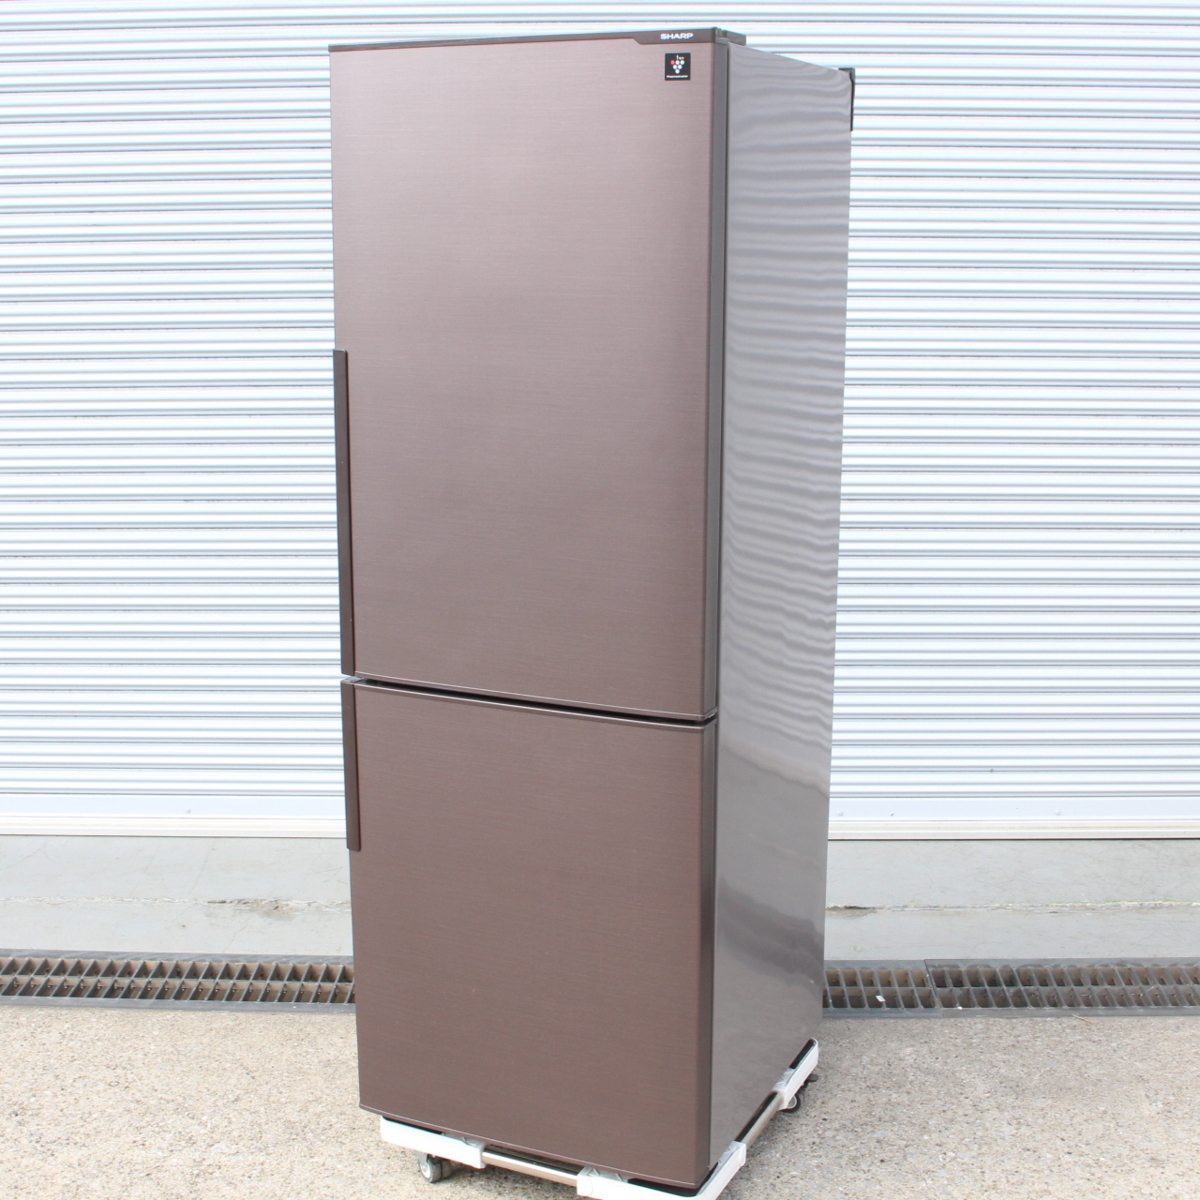 東京都中野区にて シャープ ノンフロン冷凍冷蔵庫 SJ-PD27C-T 2017年製 を出張買取させて頂きました。